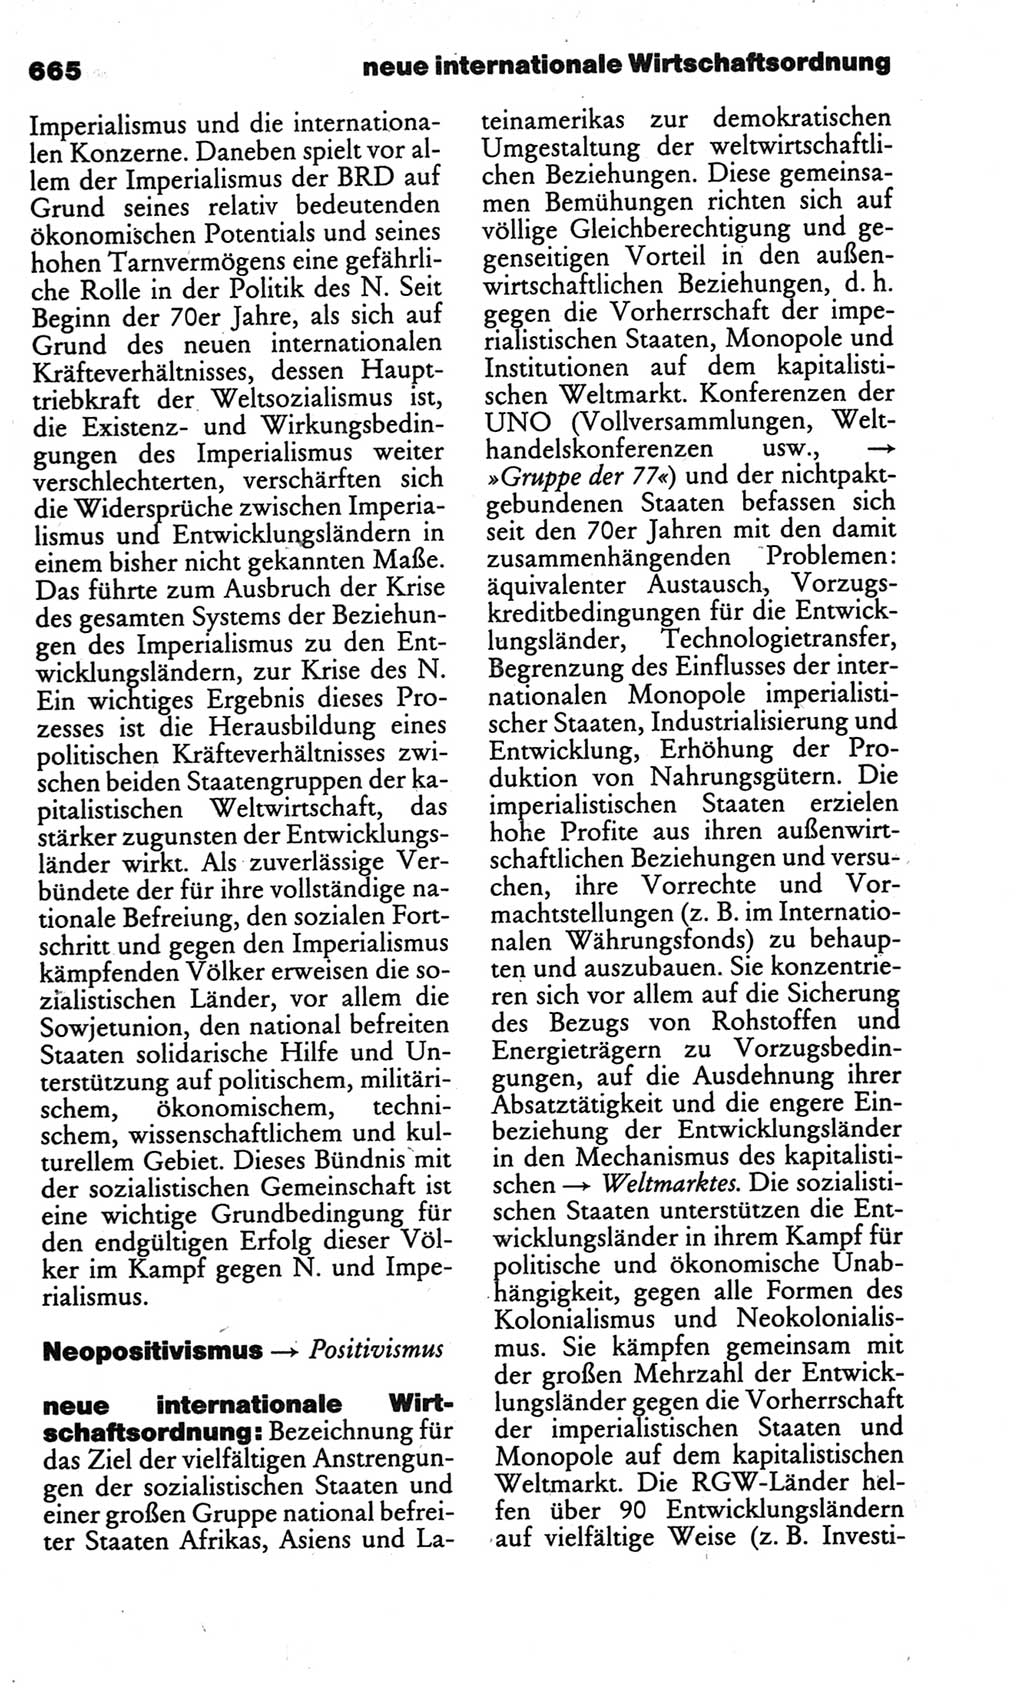 Kleines politisches Wörterbuch [Deutsche Demokratische Republik (DDR)] 1986, Seite 665 (Kl. pol. Wb. DDR 1986, S. 665)